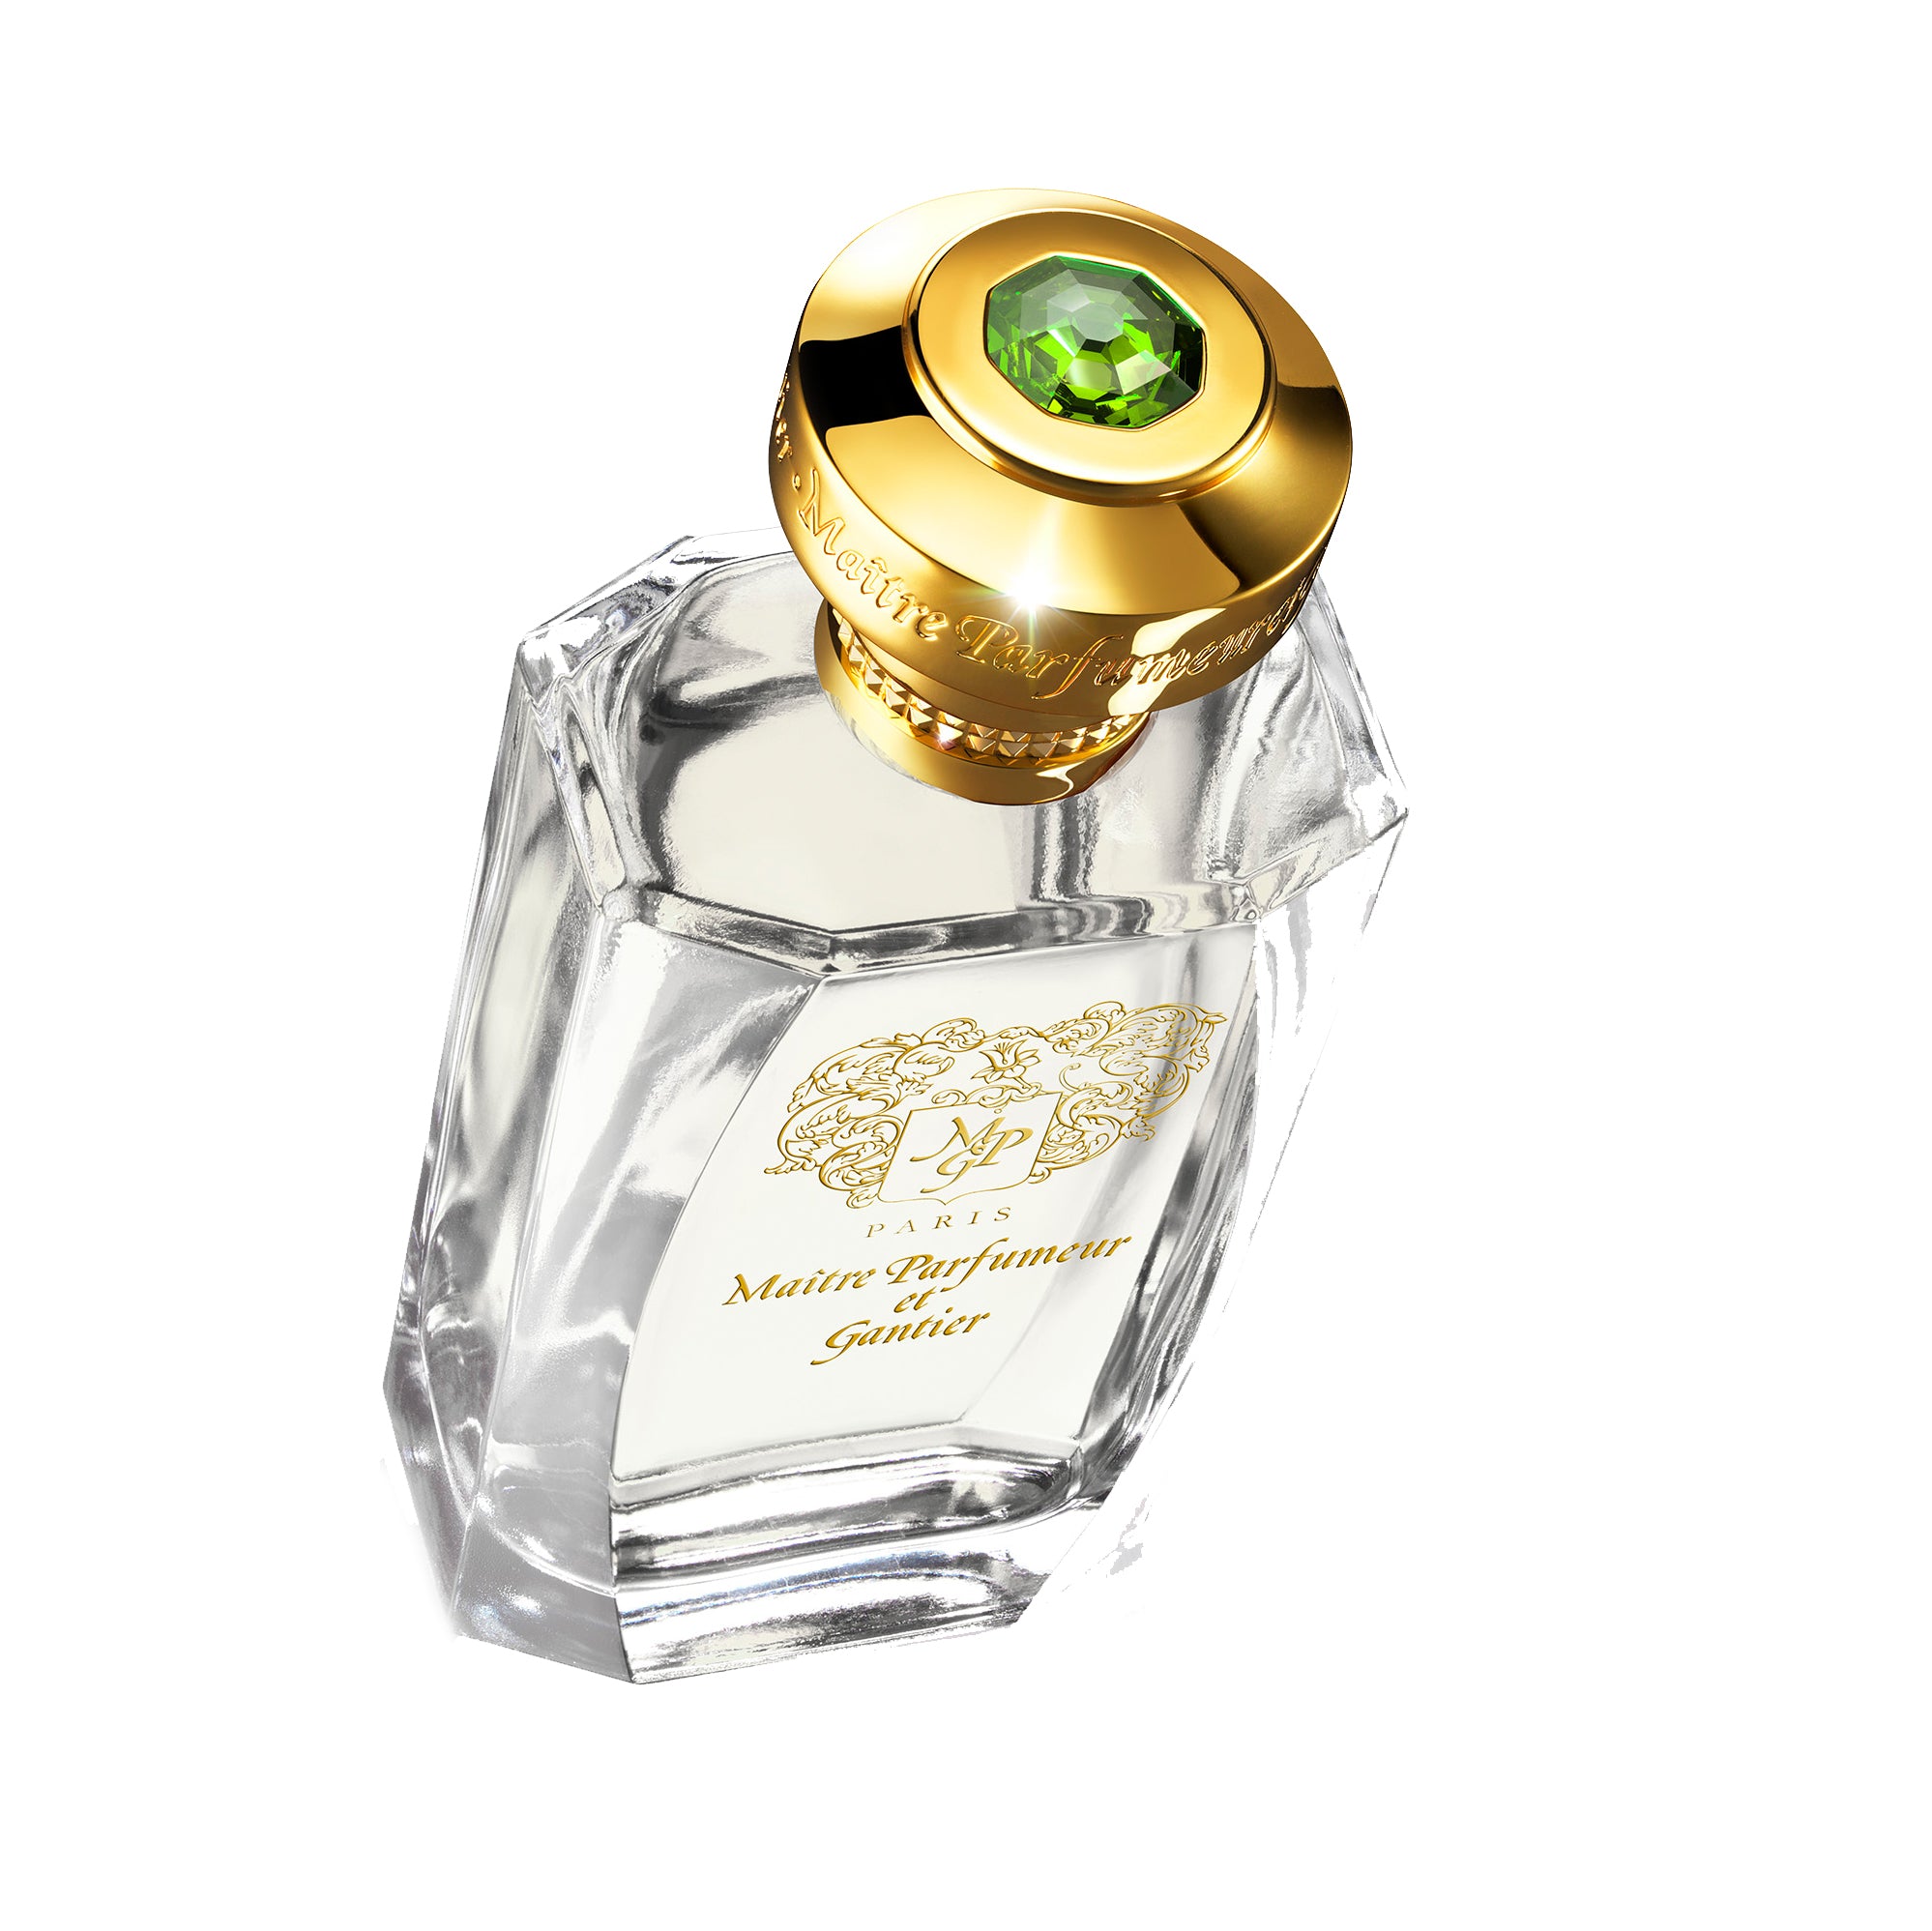 Garrigue 120ml Eau de Parfum Bottle by MAÎTRE PARFUMEUR ET GANTIER